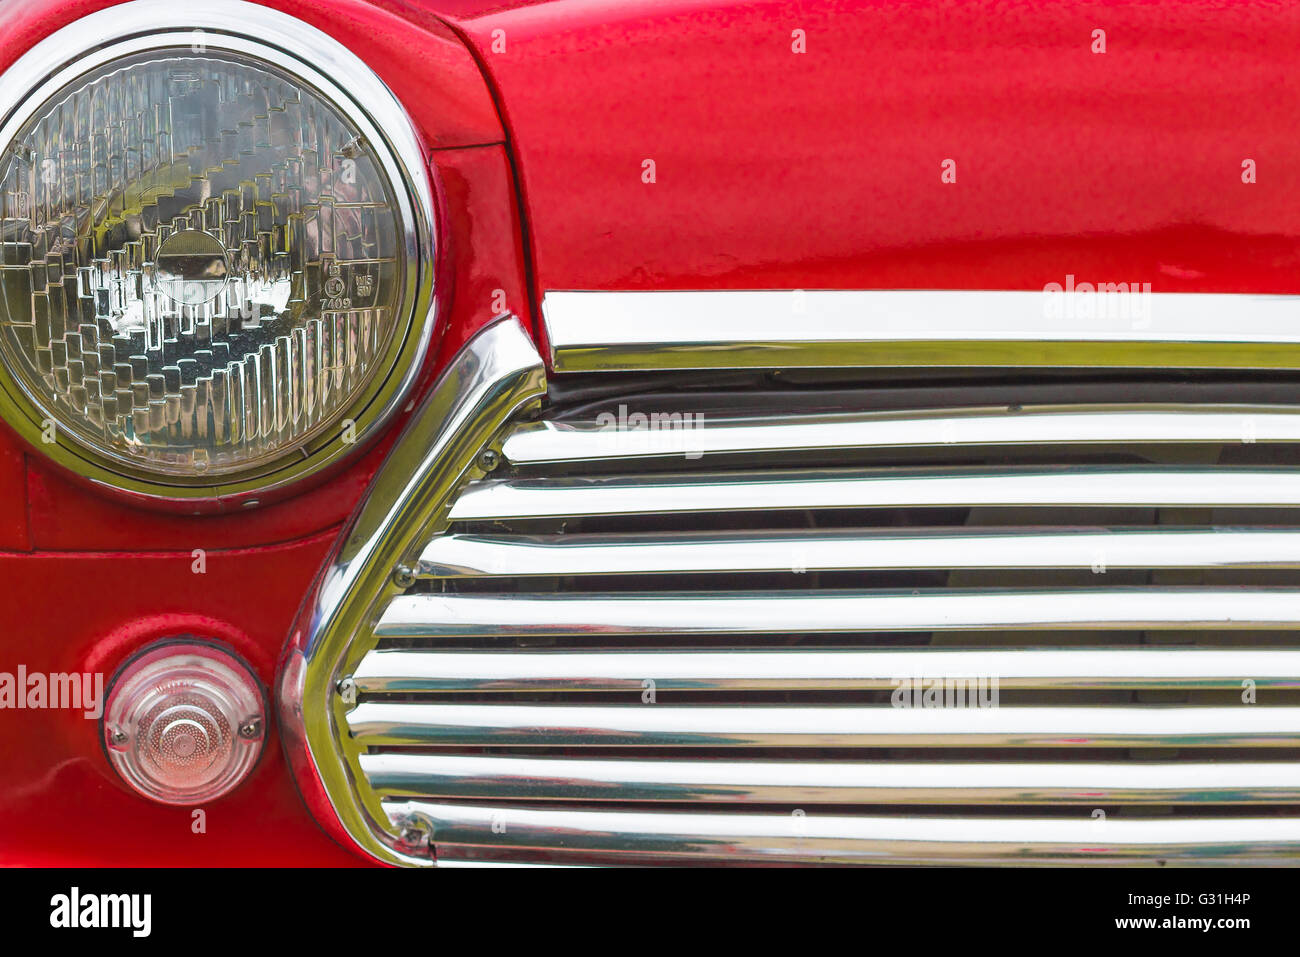 Dettaglio della parte anteriore di un colore rosso brillante degli anni sessanta Mini auto. Foto Stock